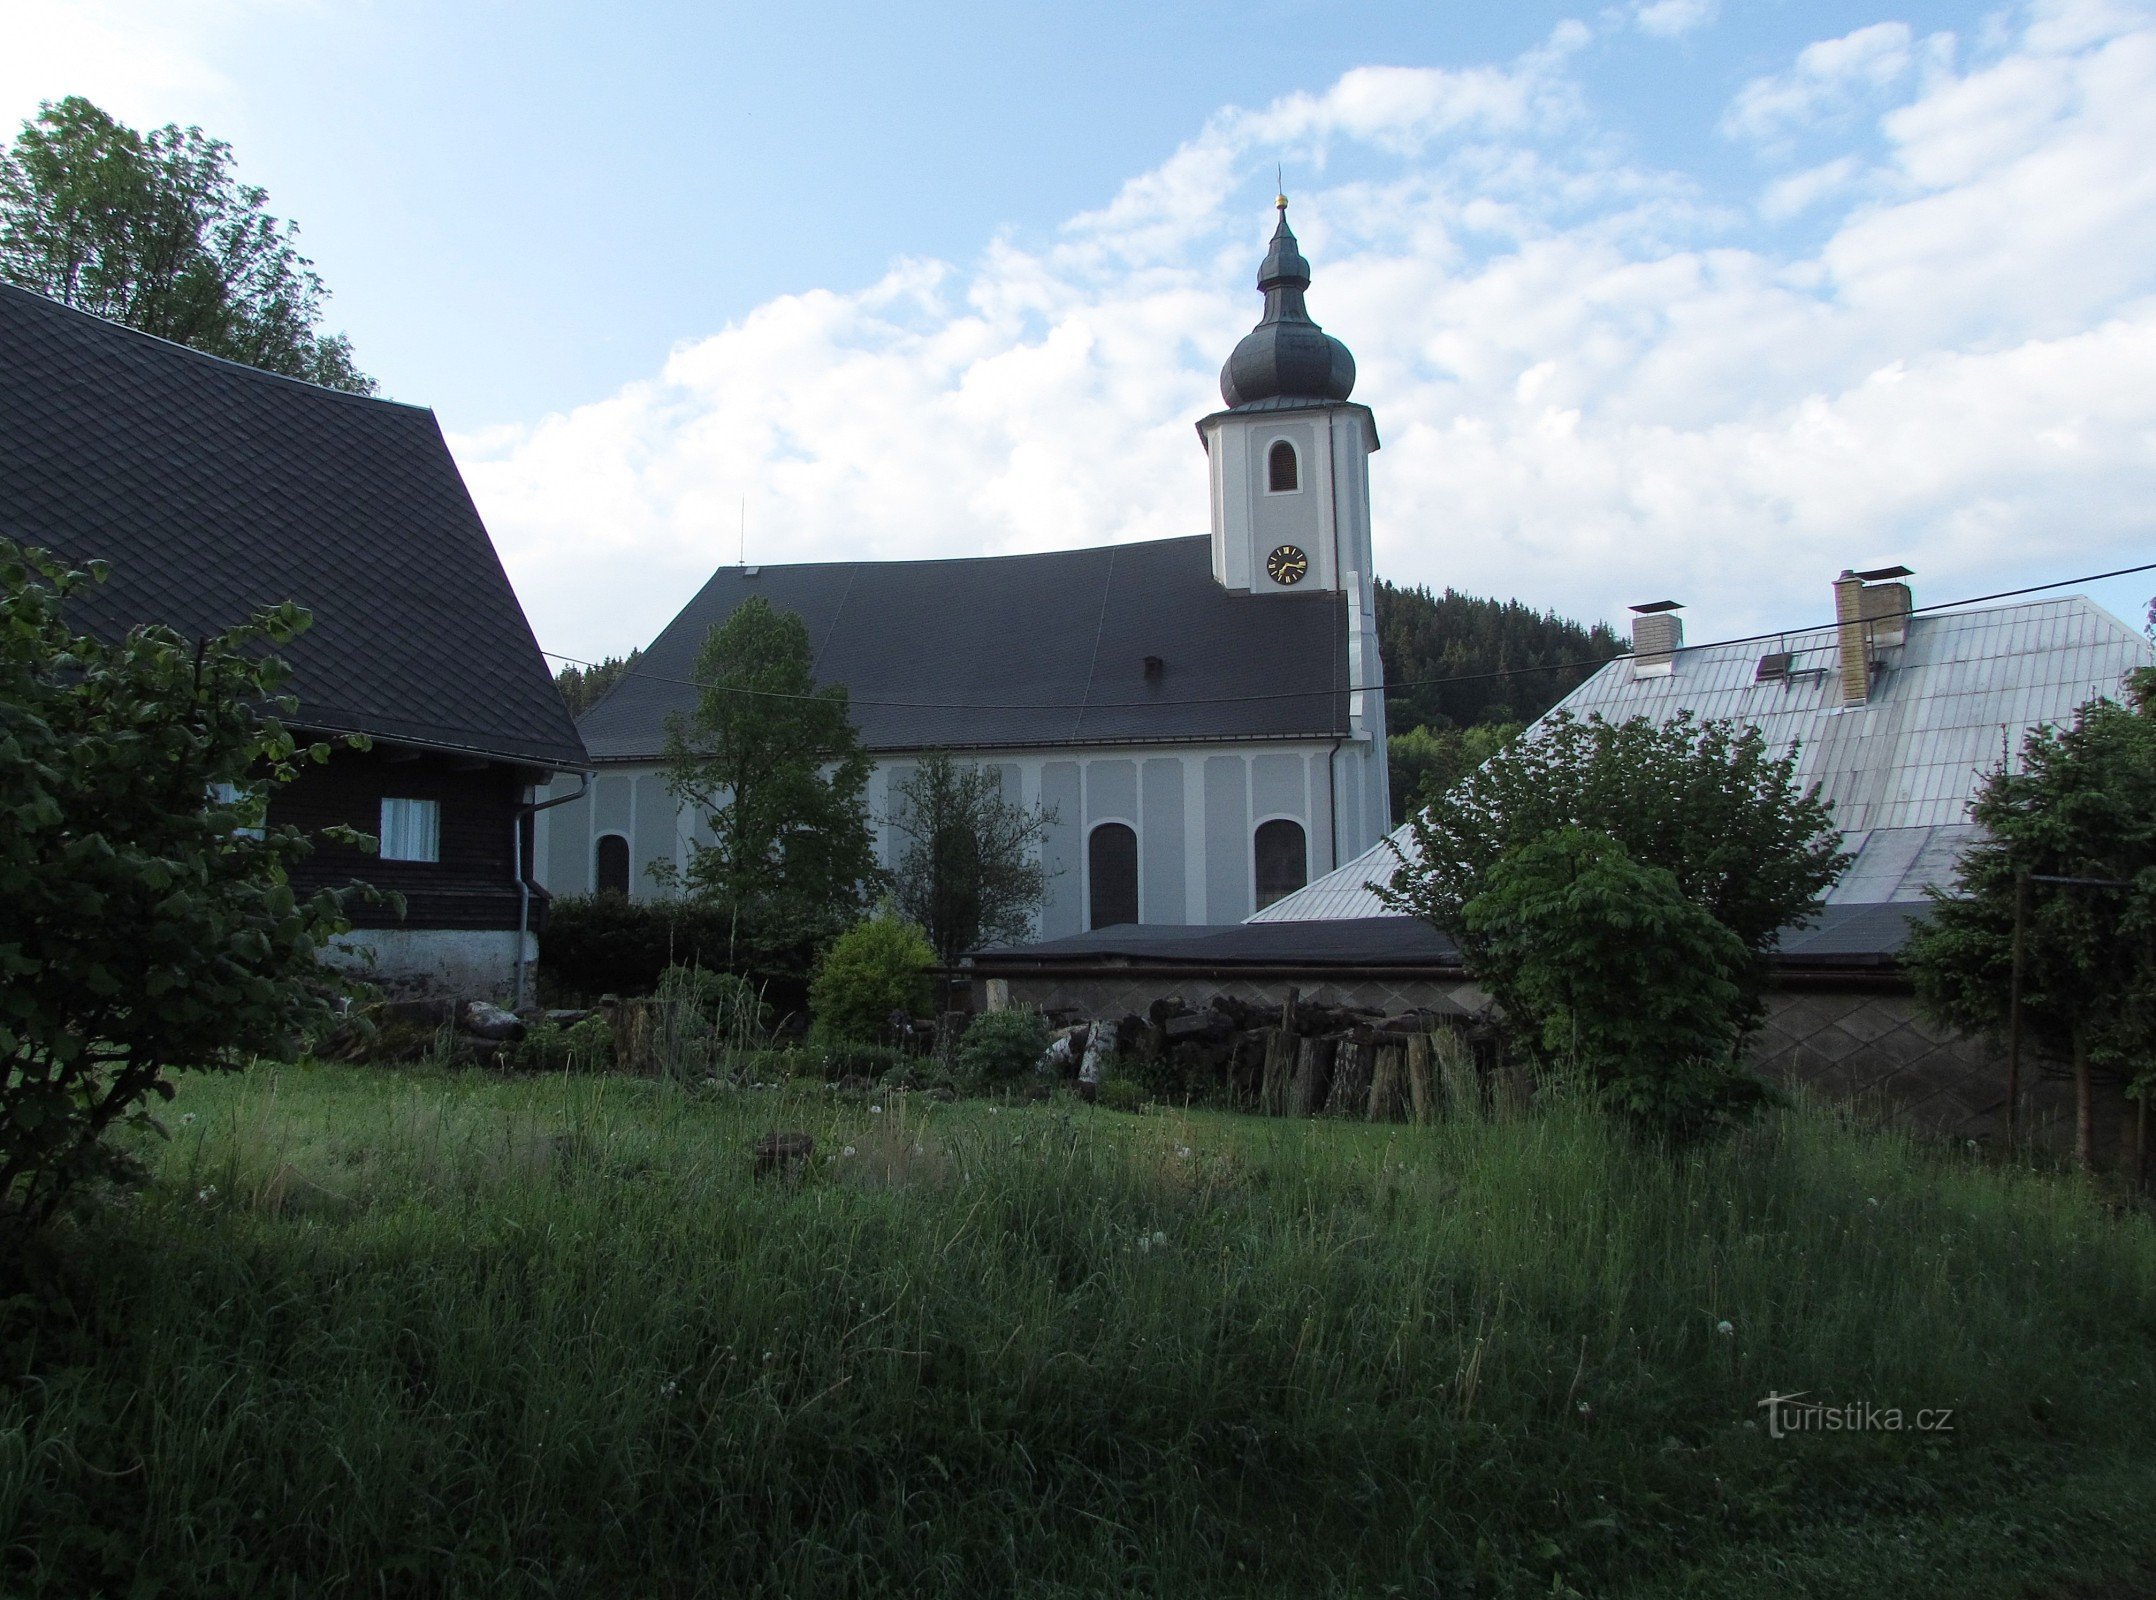 Heřmanovice - Nhà thờ Thánh Andrew và các di tích linh thiêng khác